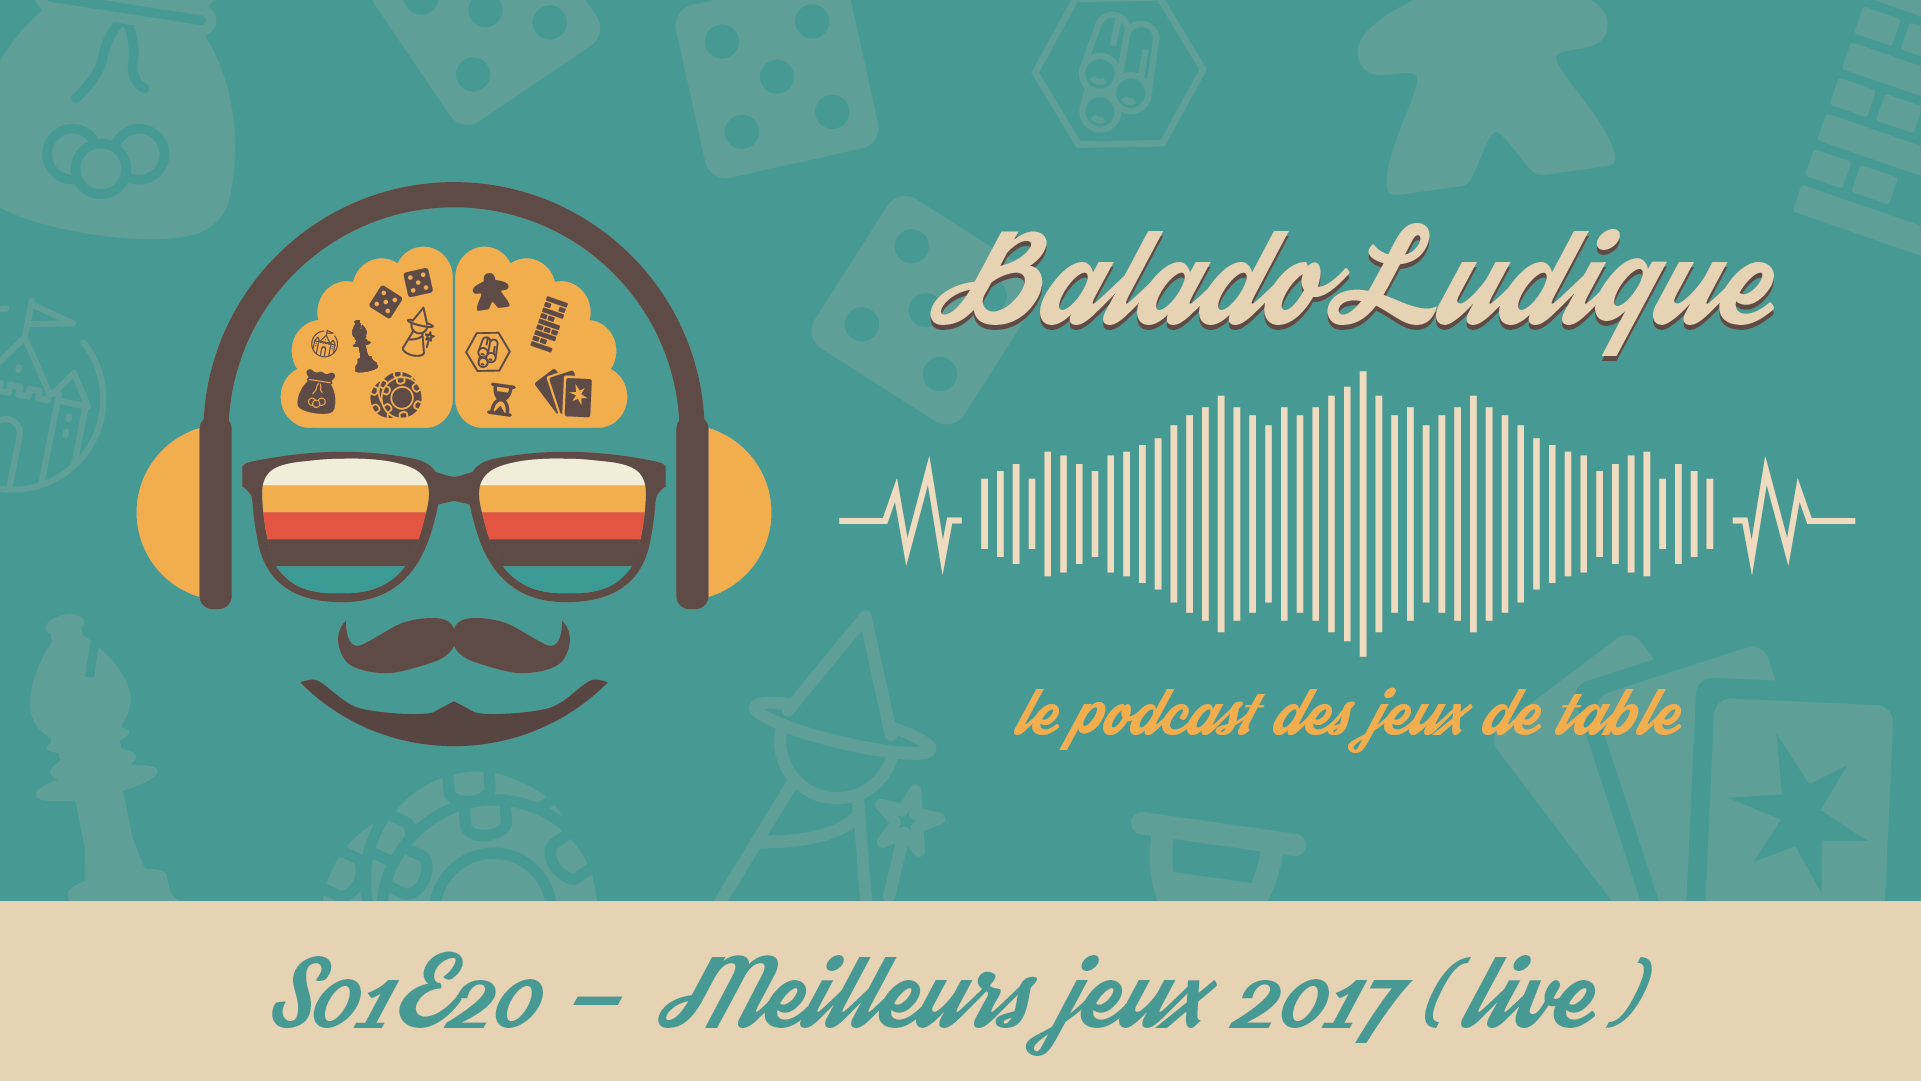 Meilleurs jeux 2017 - BaladoLudique - s01e20